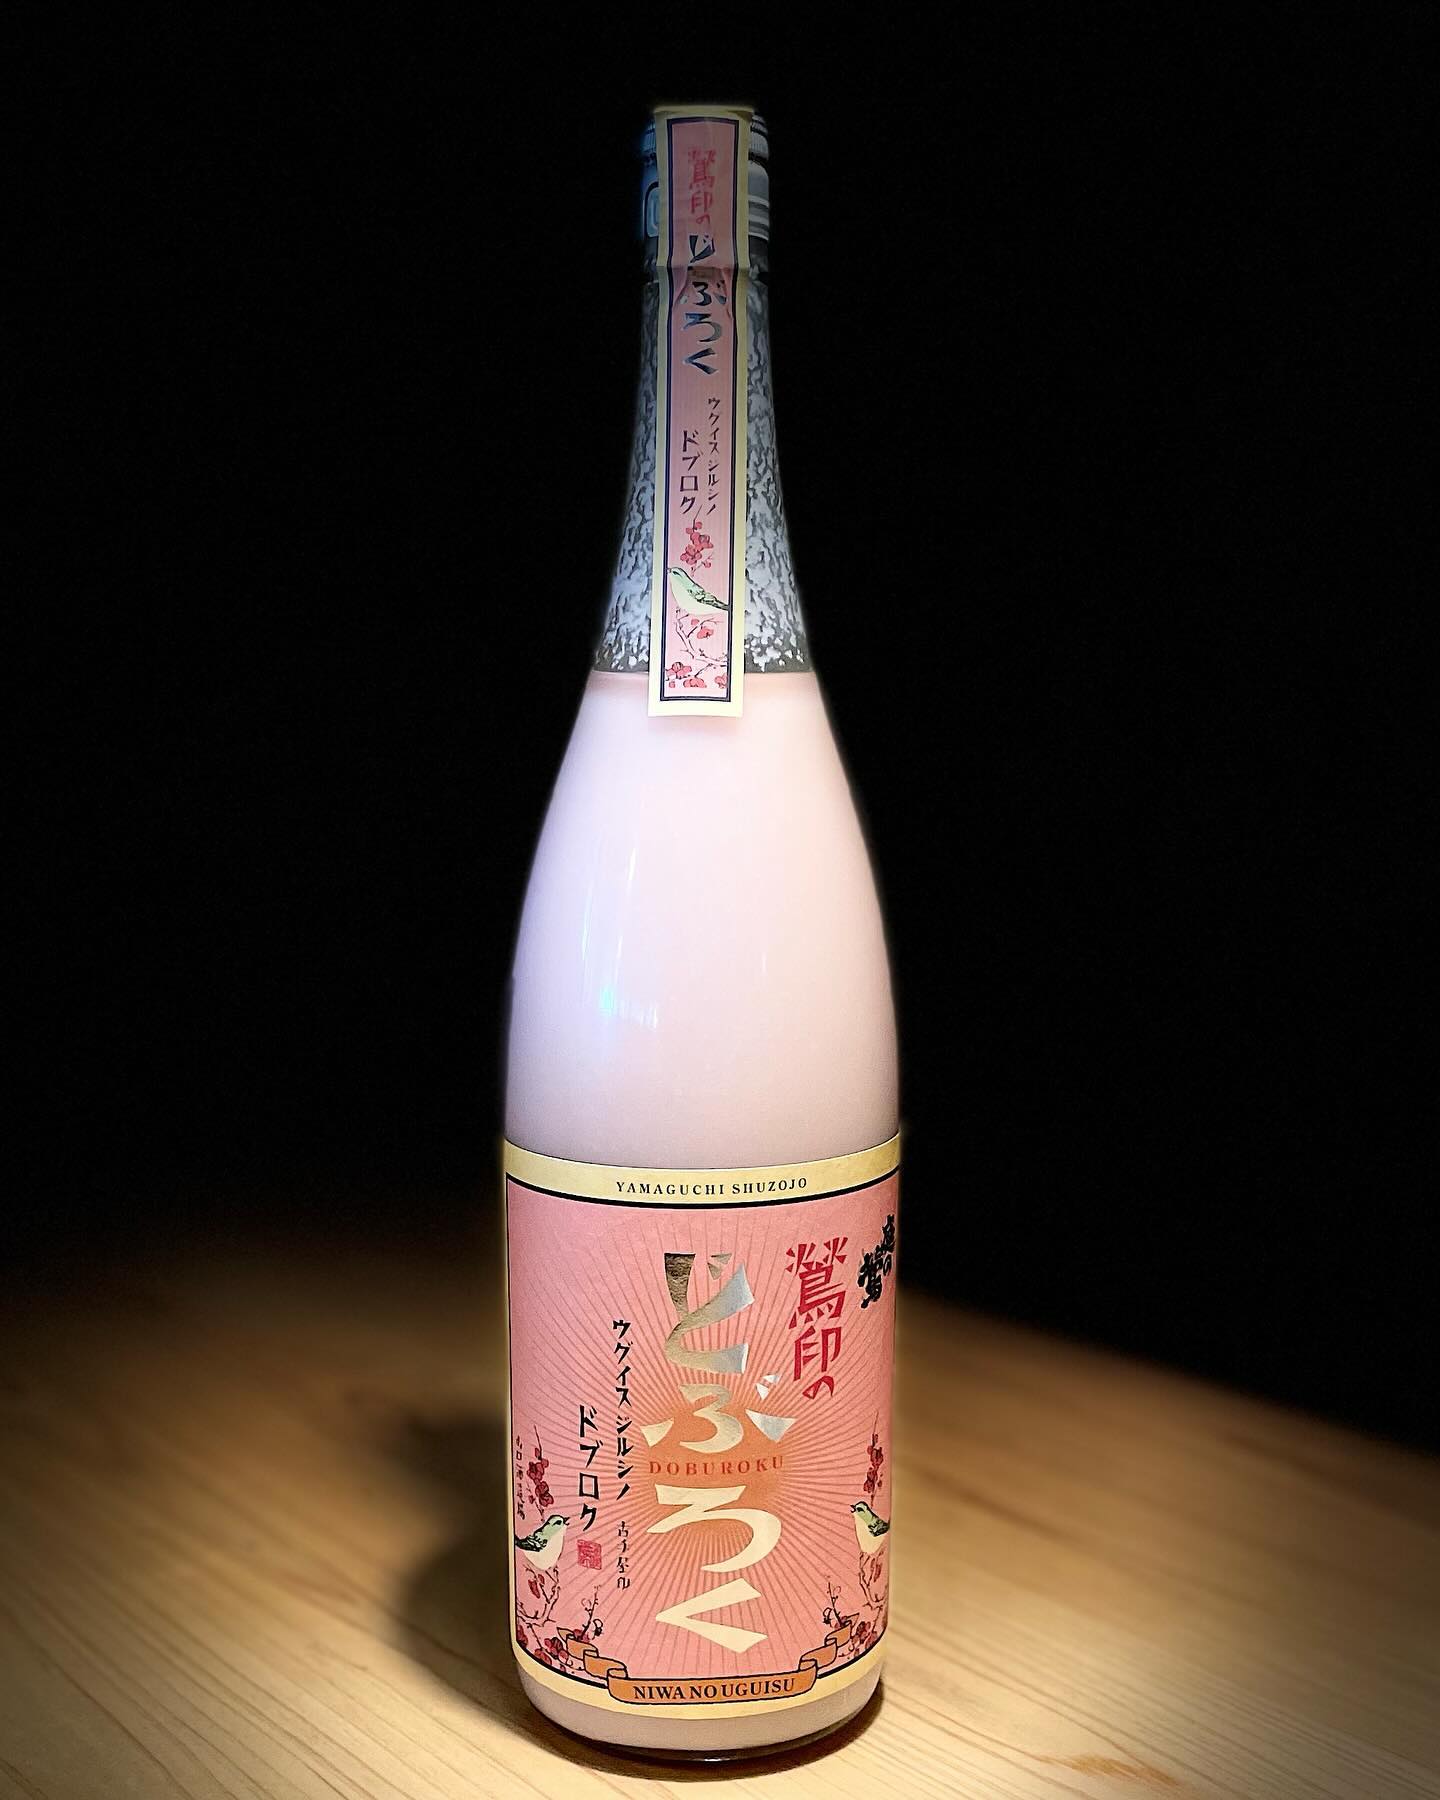 日本酒の紹介「どぶろく」です！
こちらの特徴は、飲んだ時は甘酸っぱく爽やかな飲み心地になります。